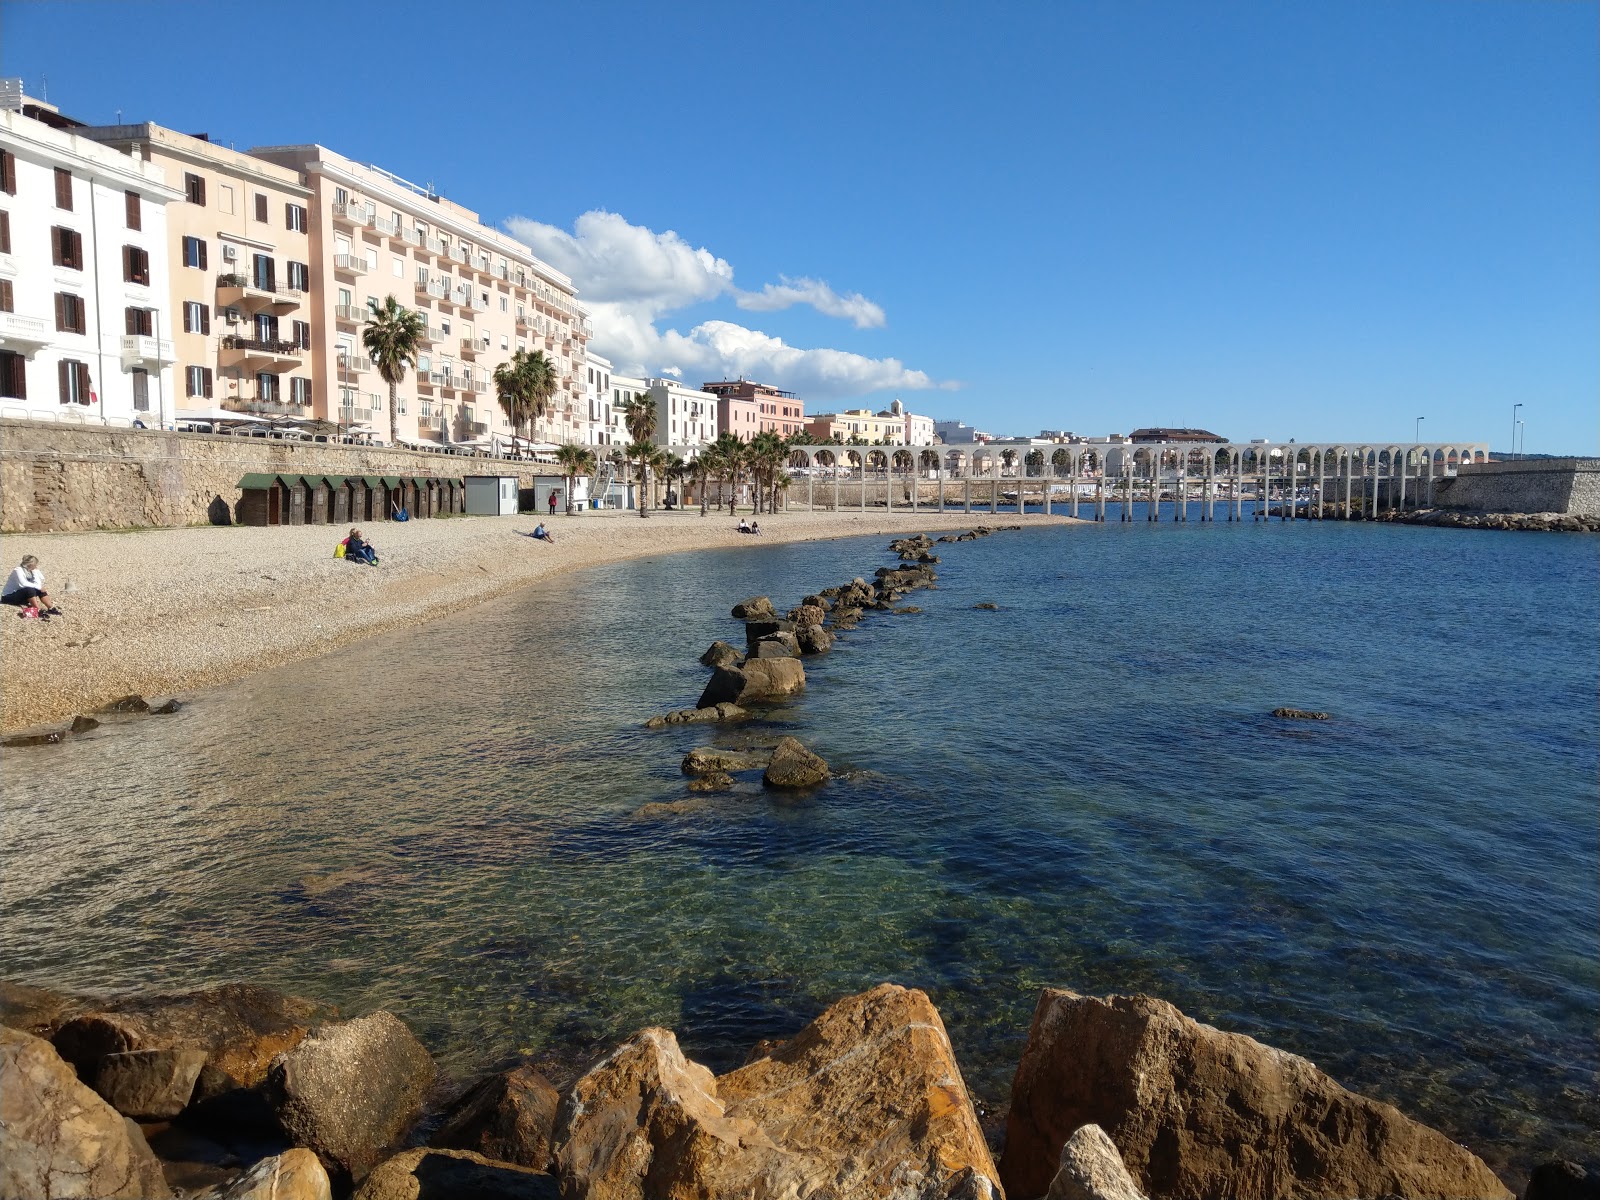 Foto av Spiaggia il pirgo och bosättningen